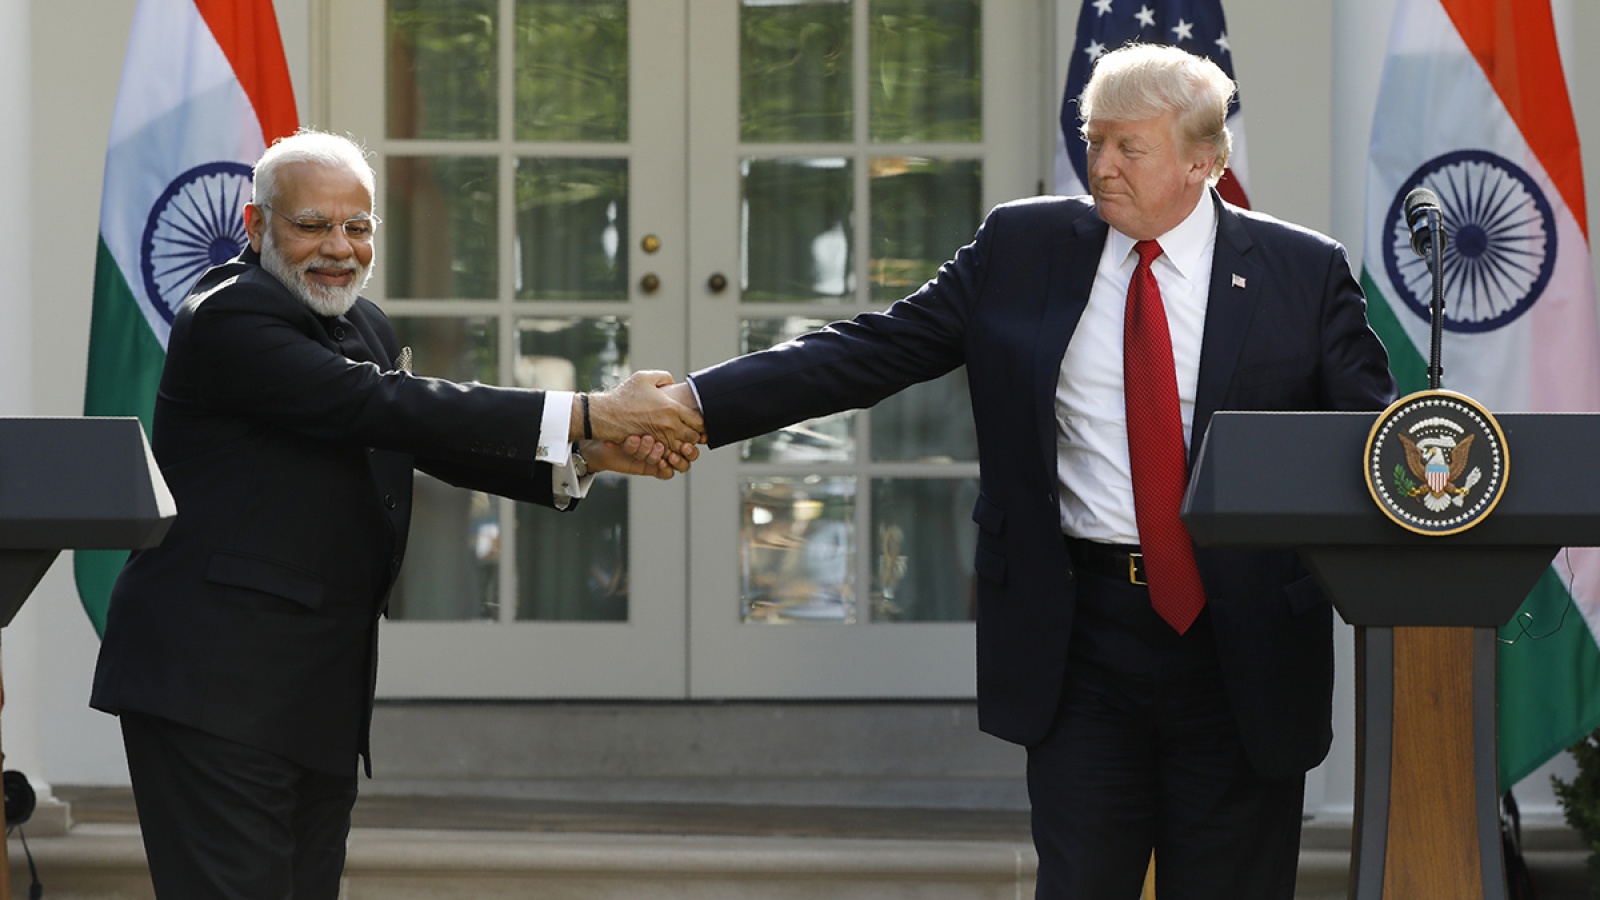 अमेरिकी राष्ट्रपति डोनाल्ड ट्रम्प के साथ भारतीय प्रधानमंत्री नरेंद्र मोदी (फाइल फोटो: रॉयटर्स)